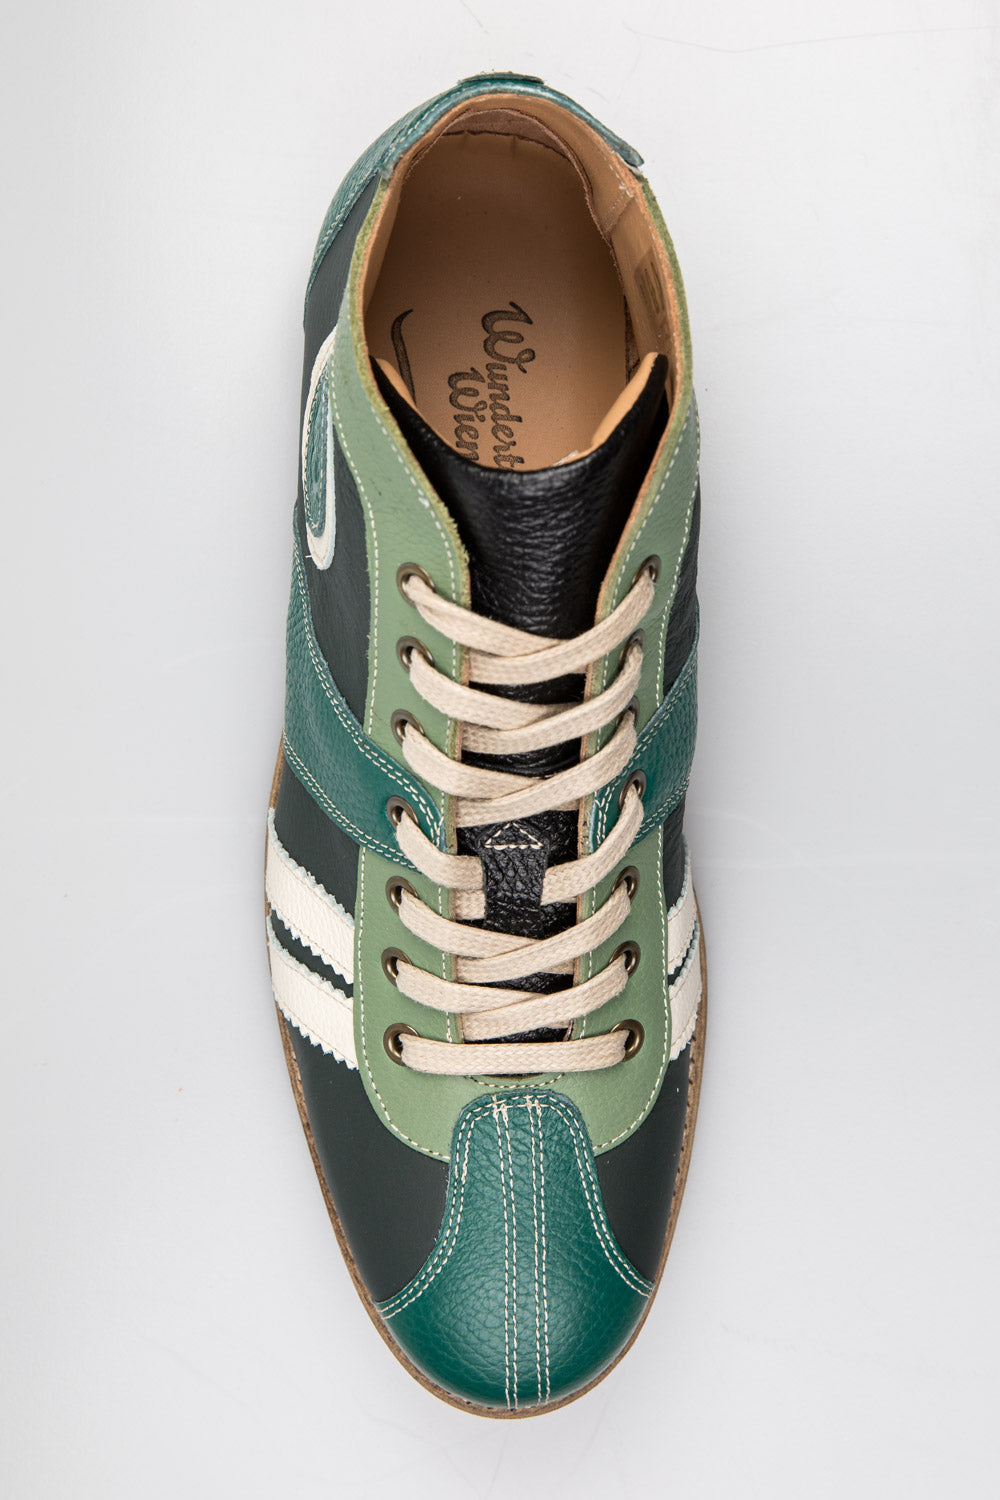 "The Racer" Retro Sneaker green/white